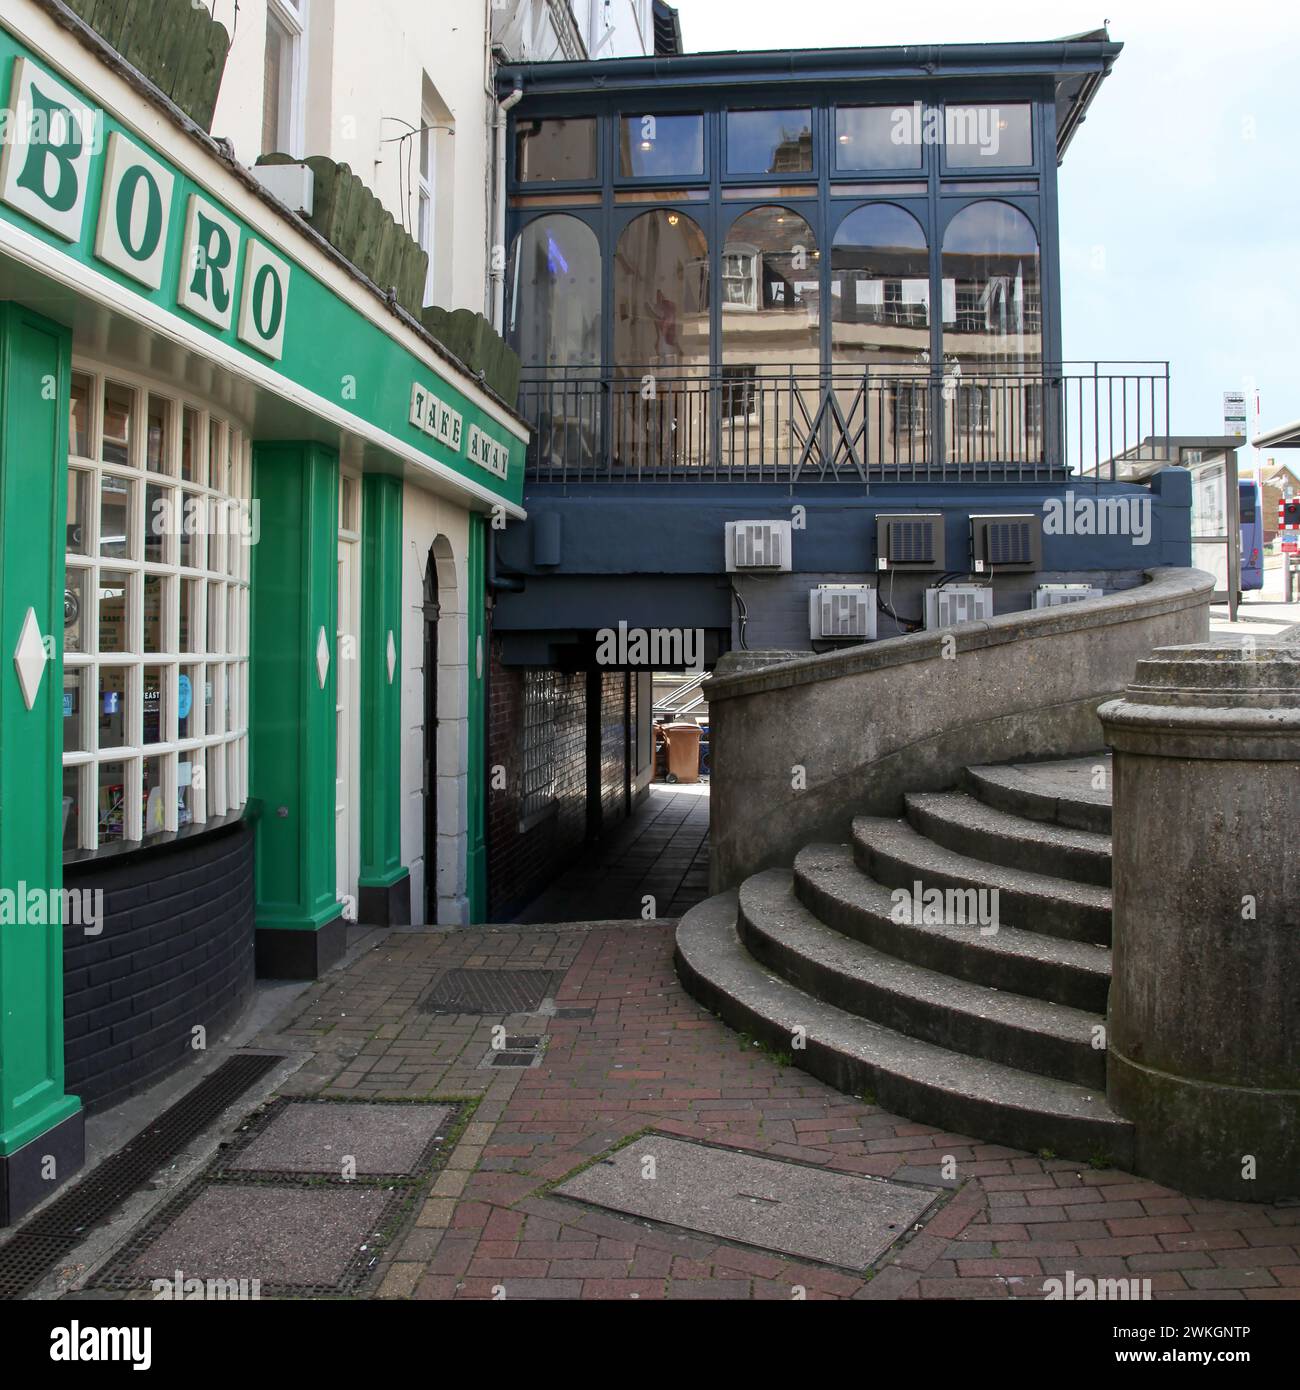 Alte Gebäude in Weymouth Old Town mit Marlboro Fish and Chips Shop auf der linken Seite in Weymouth, Dorset, England, Großbritannien. Stockfoto